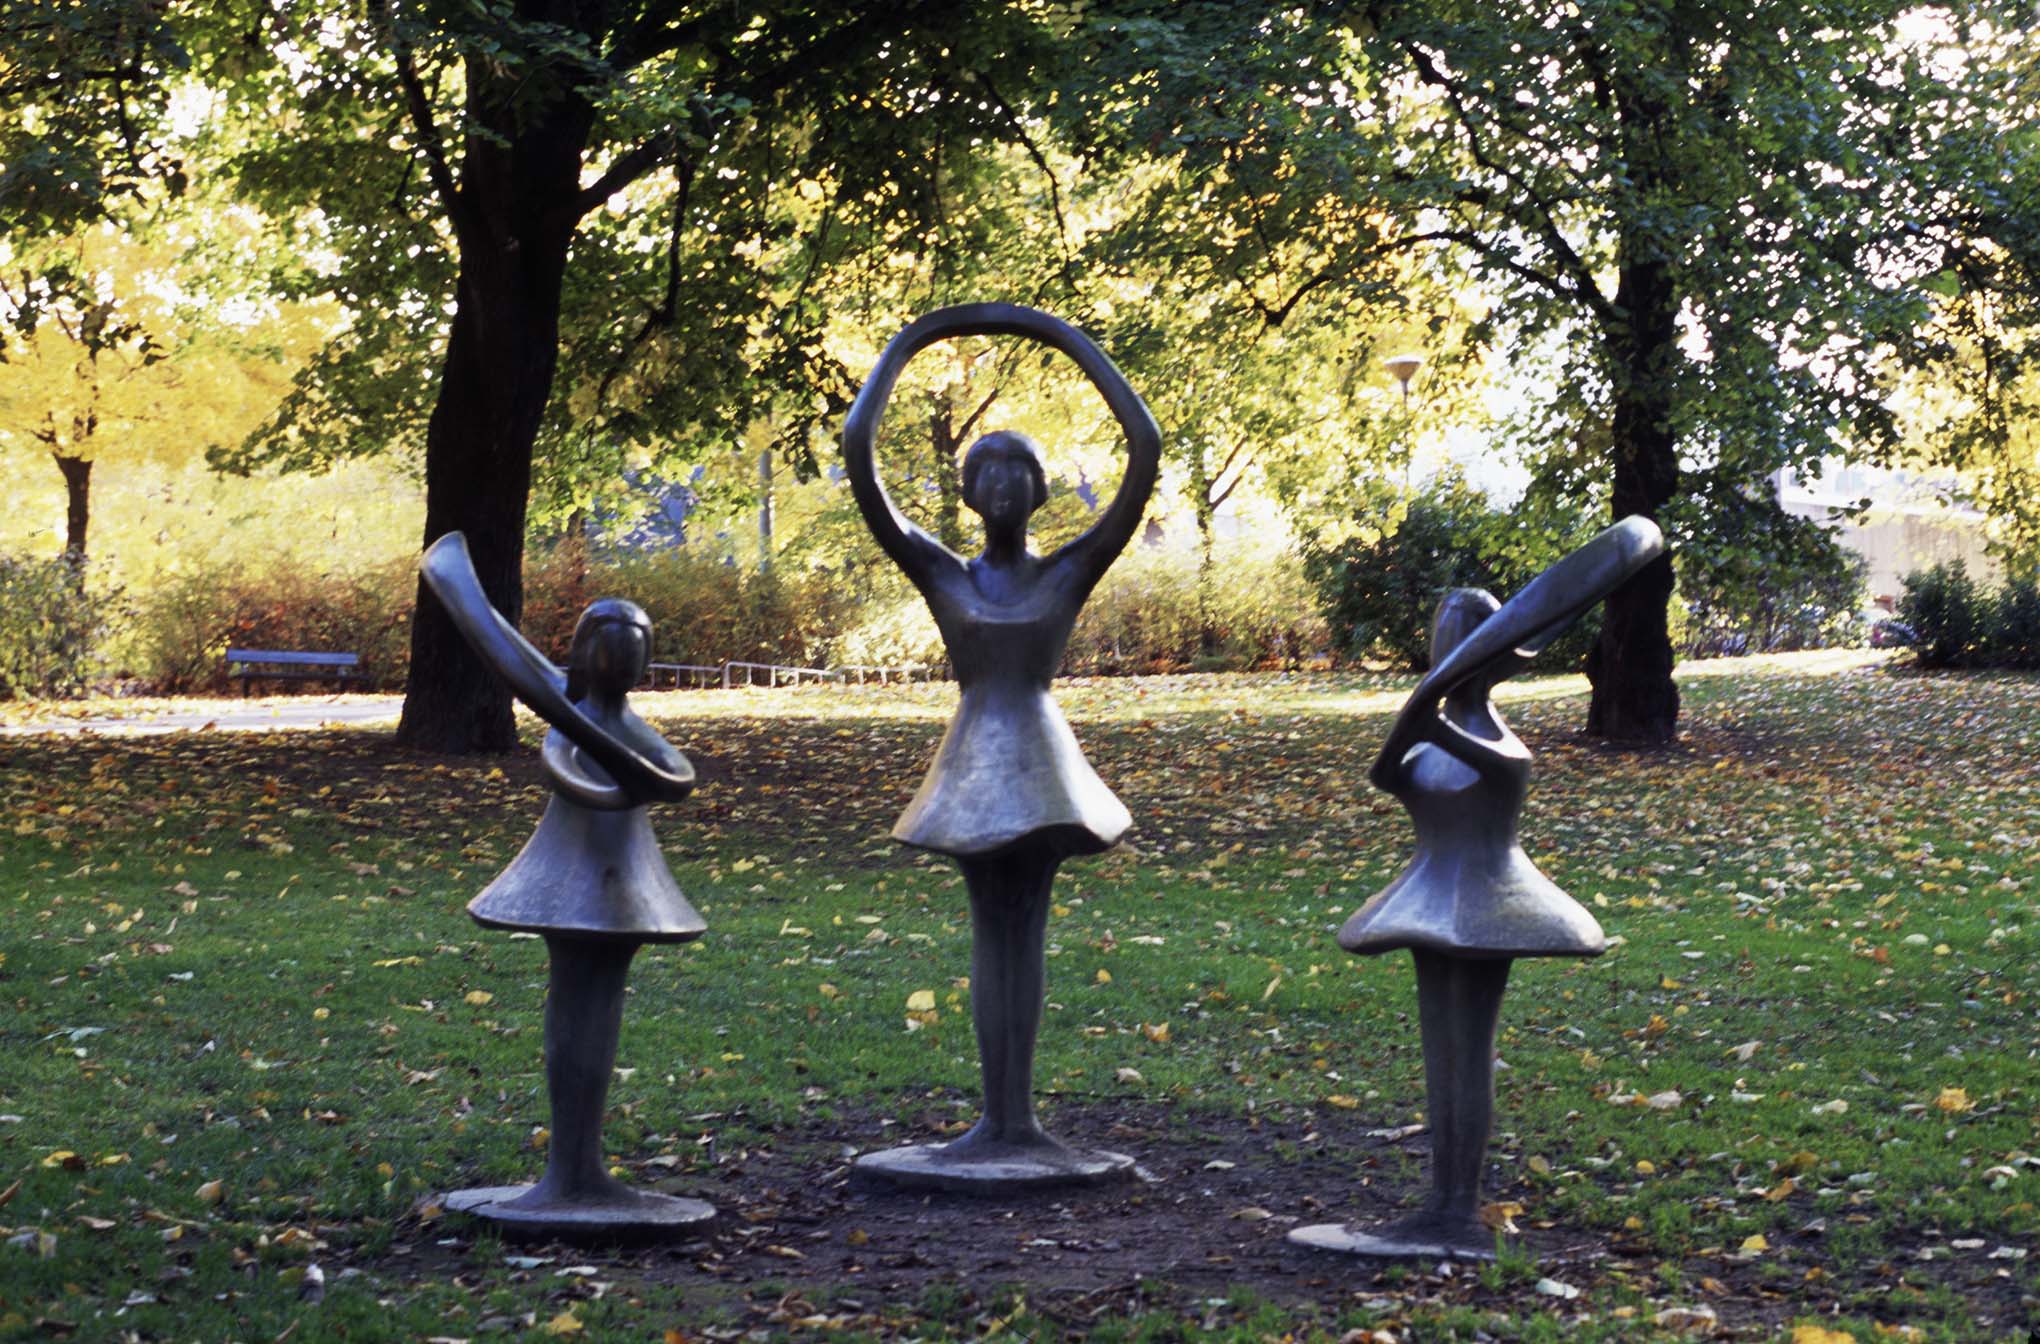 Tre skulpturer av flickor i brons med klockade kjolar står i en parkmiljö. Armarna är gjorda som runda ringar.